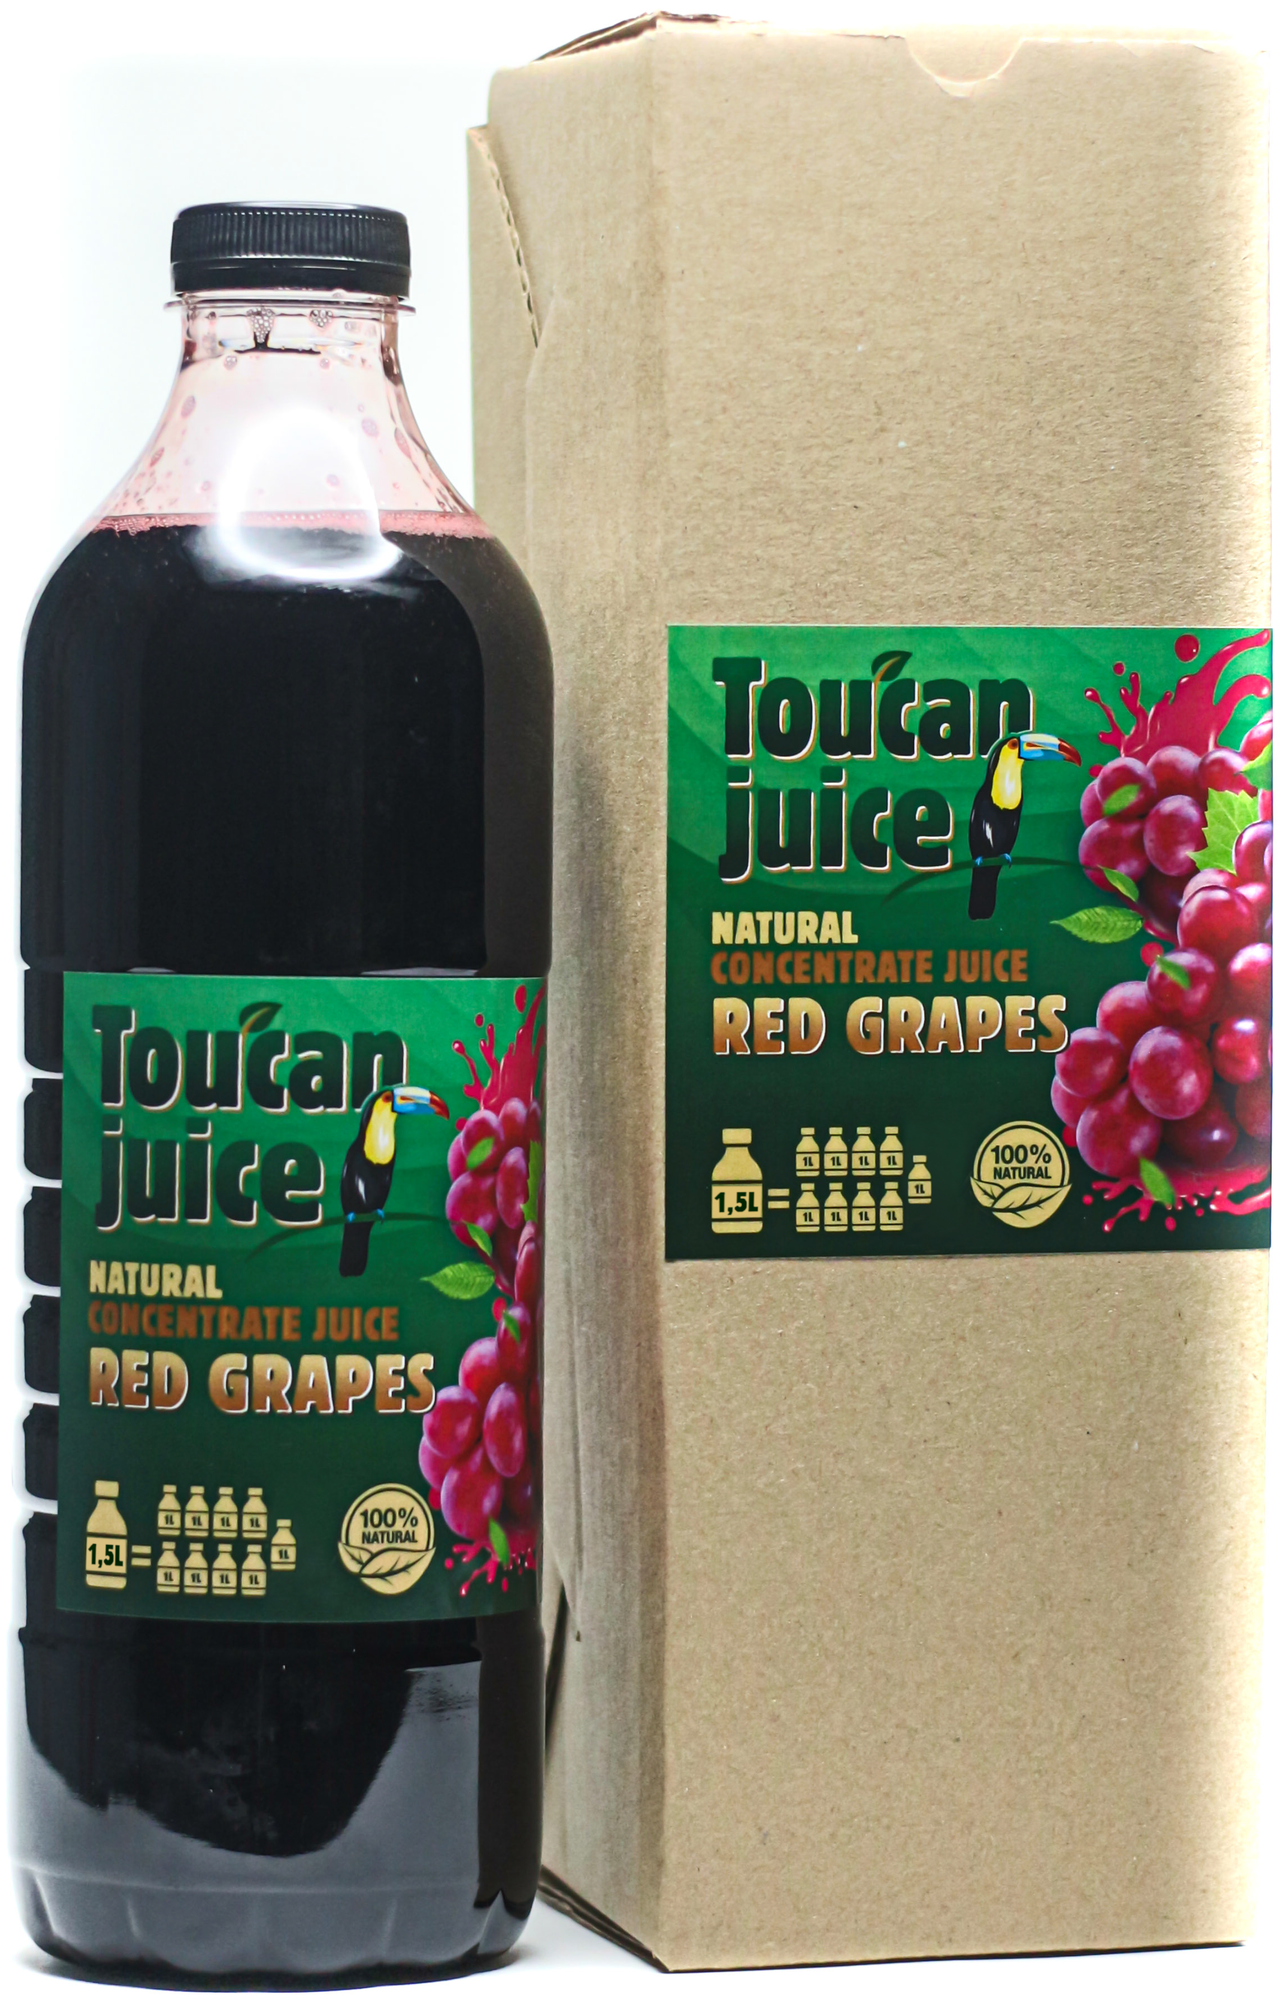 Toucan juice концентрированный сок Красного винограда 1,5л.